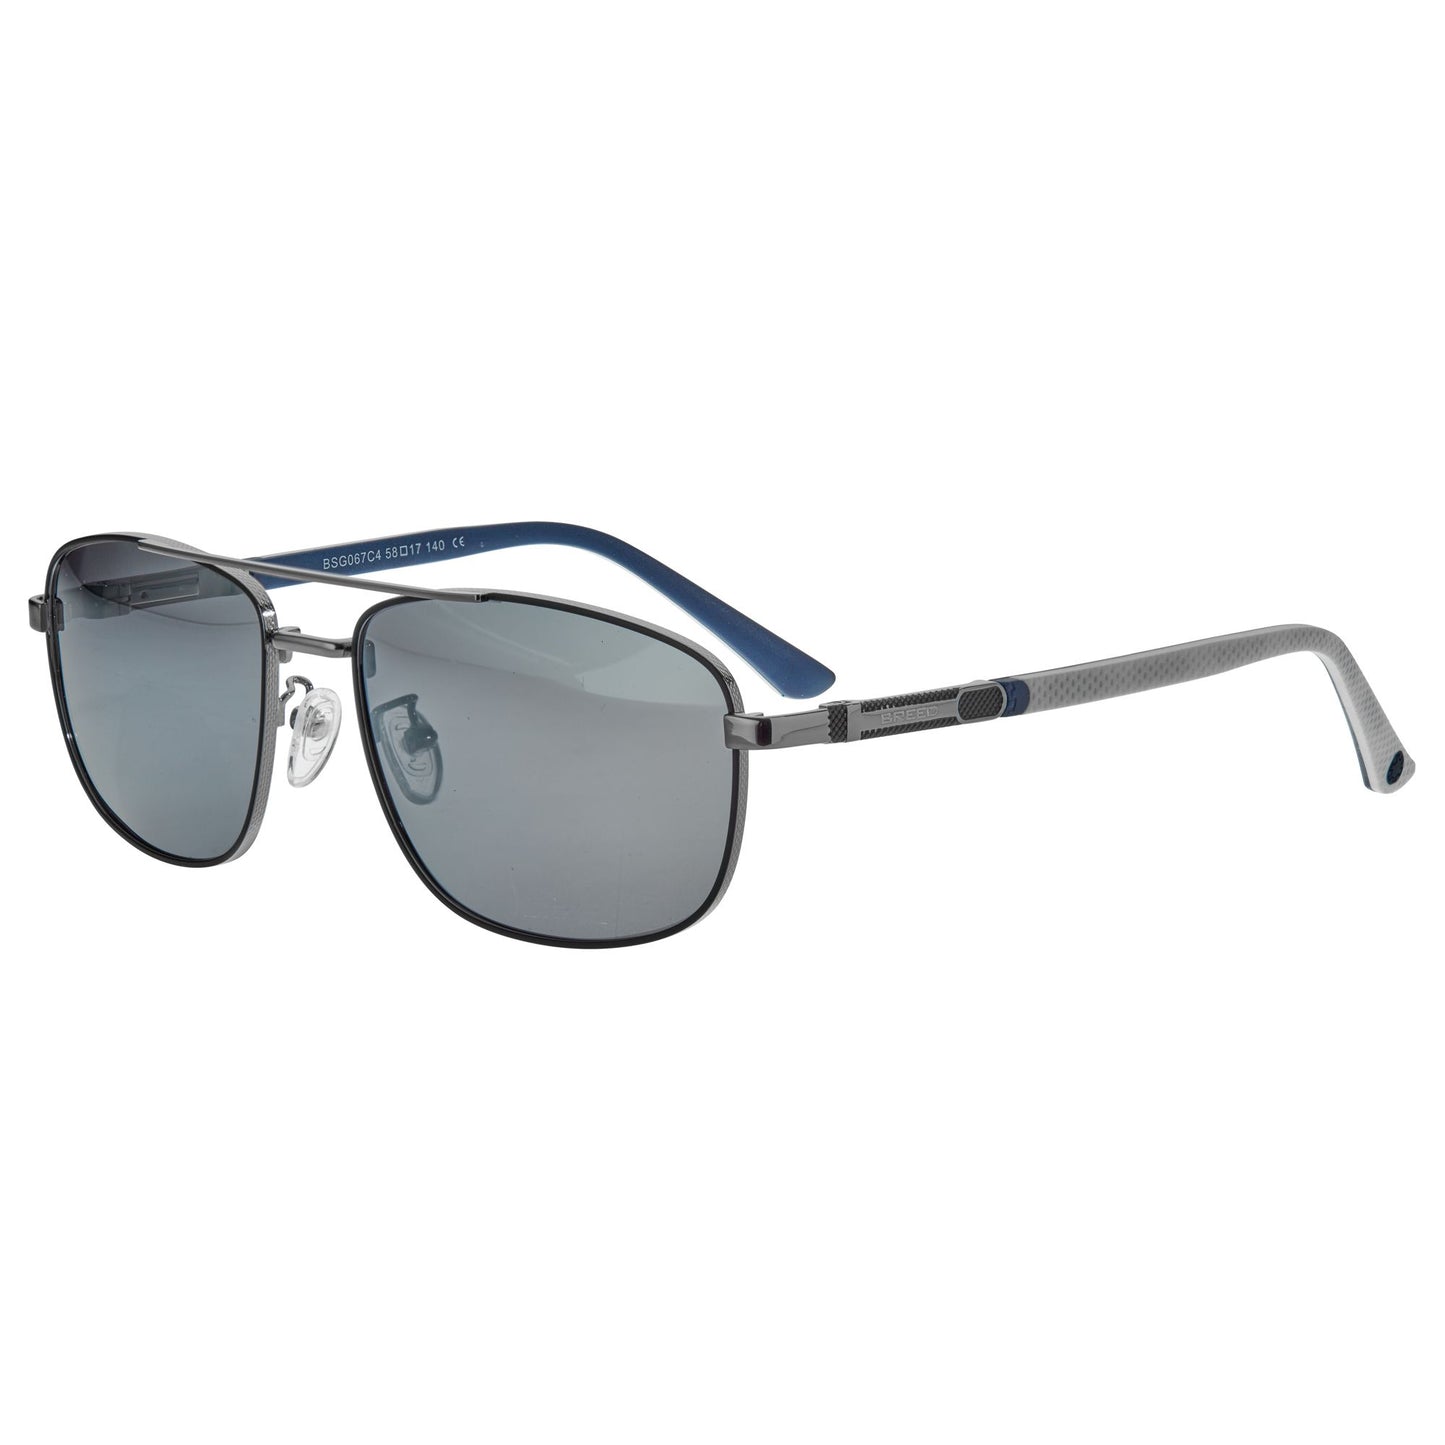 Breed Gotham Polarized Sunglasses - Gunmetal/Silver - BSG067C4